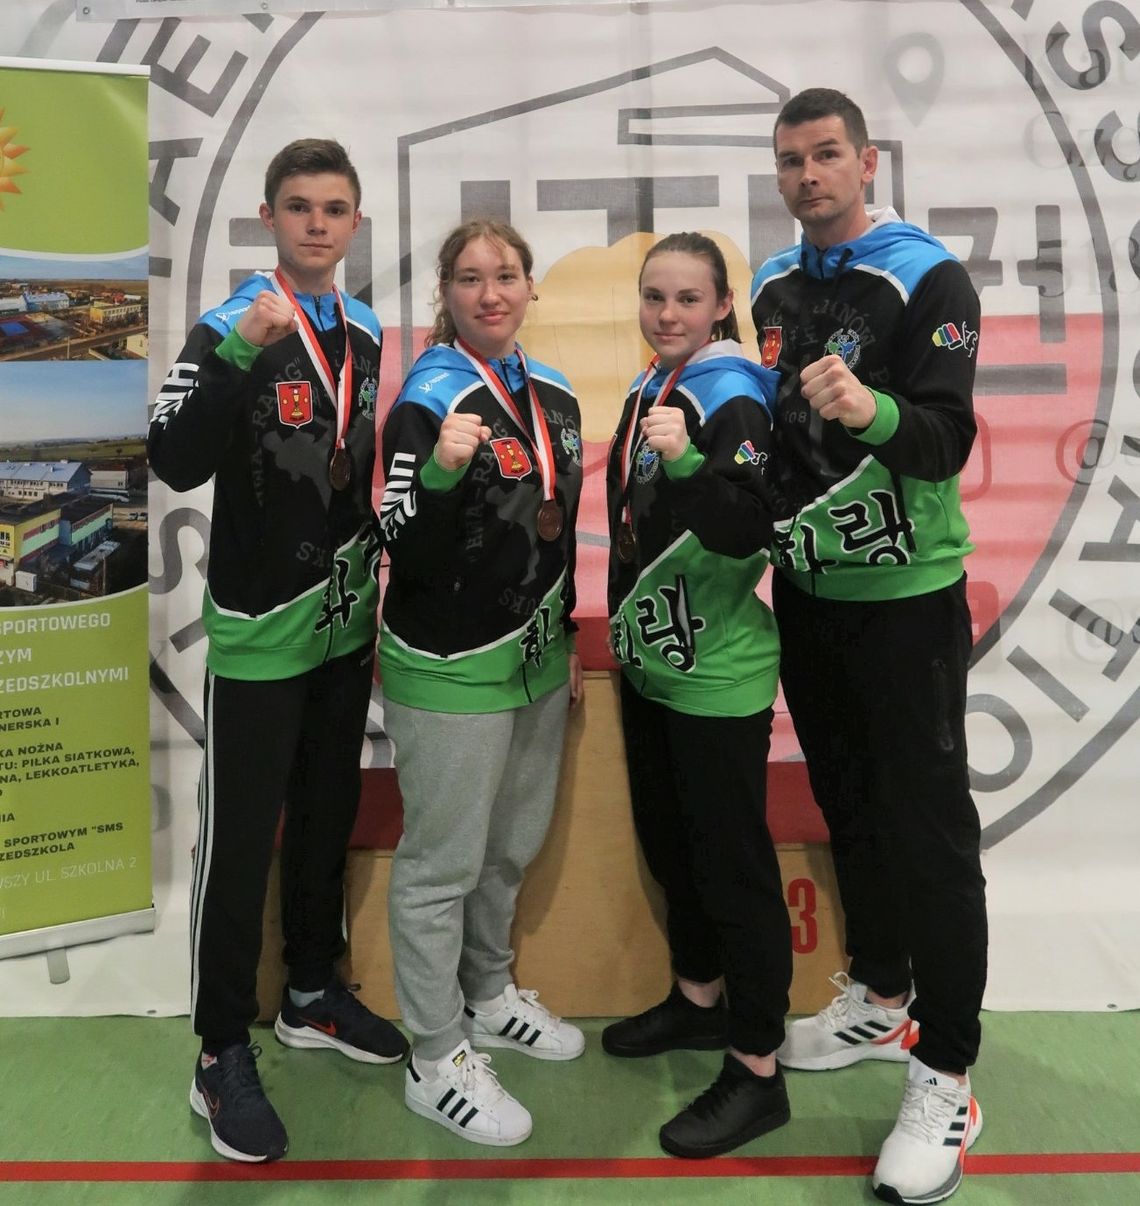 Nasi wojownicy na podium mistrzostw Polski w taekwondo